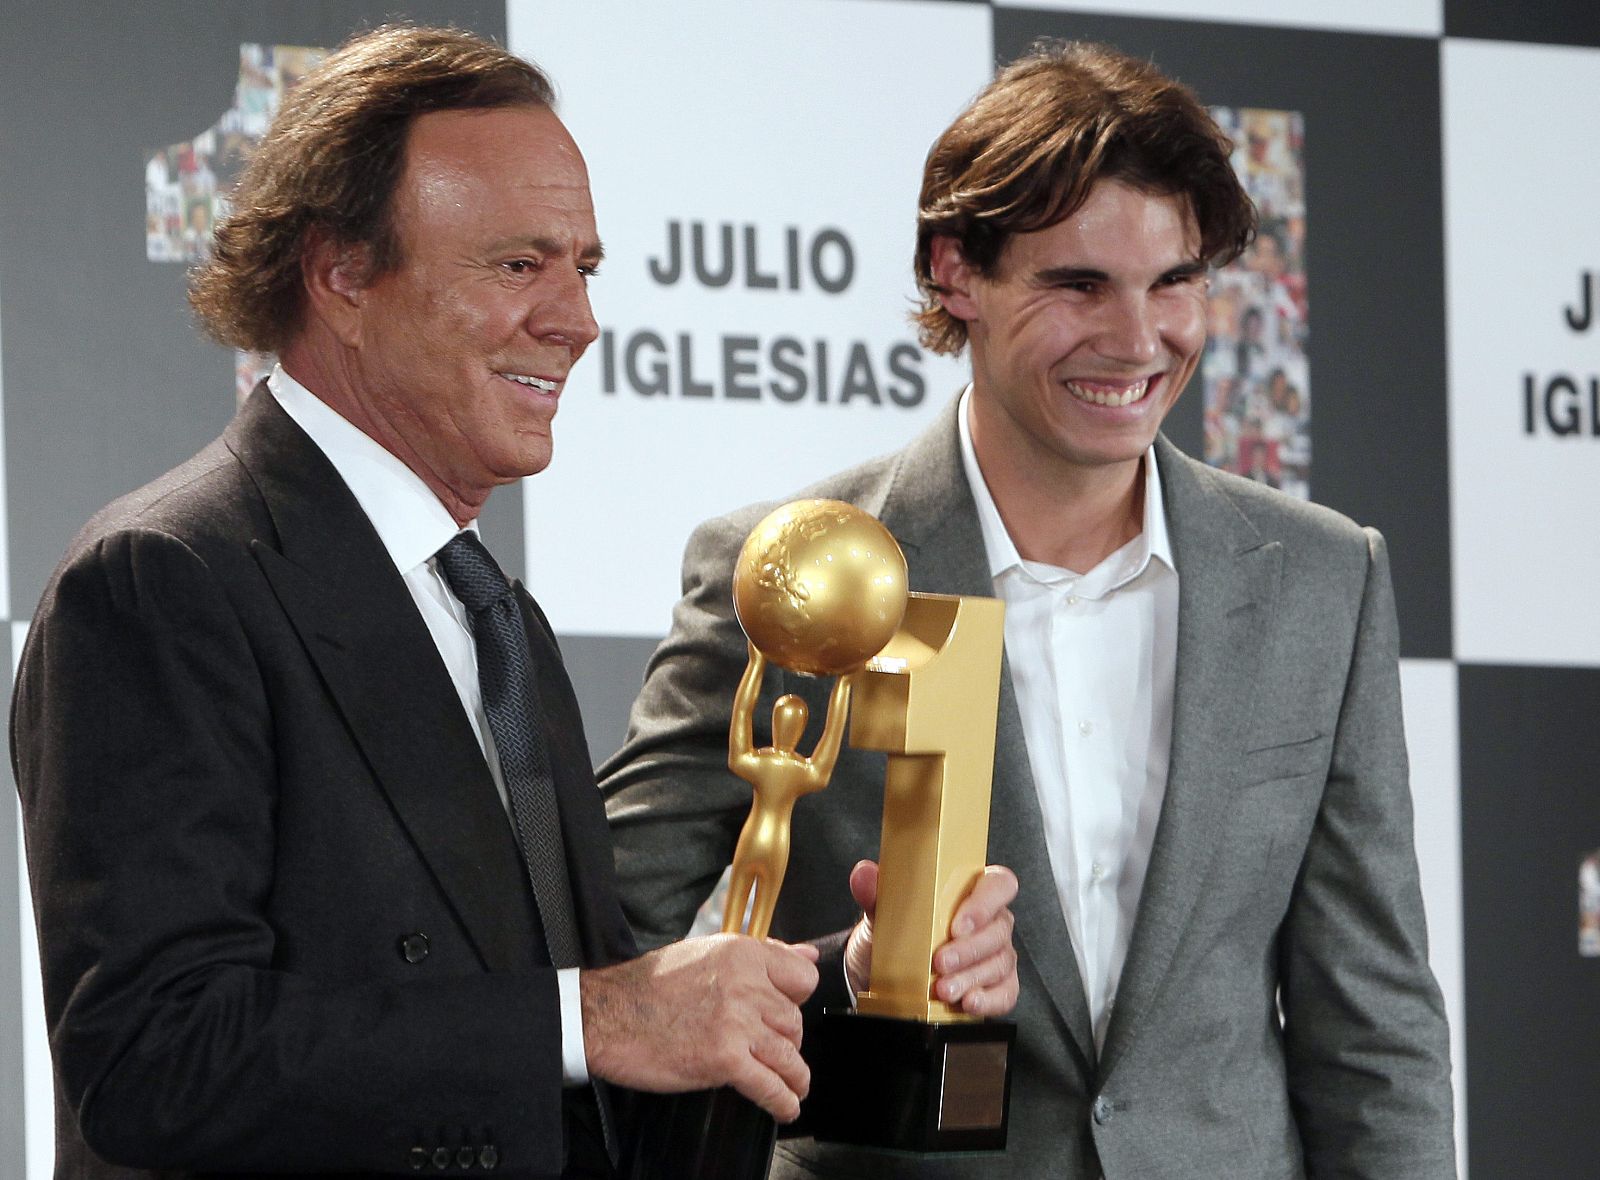 Rafa Nadal, junto a Julio Iglesias en un acto reciente. El tenista se reconoce admirador del cantante